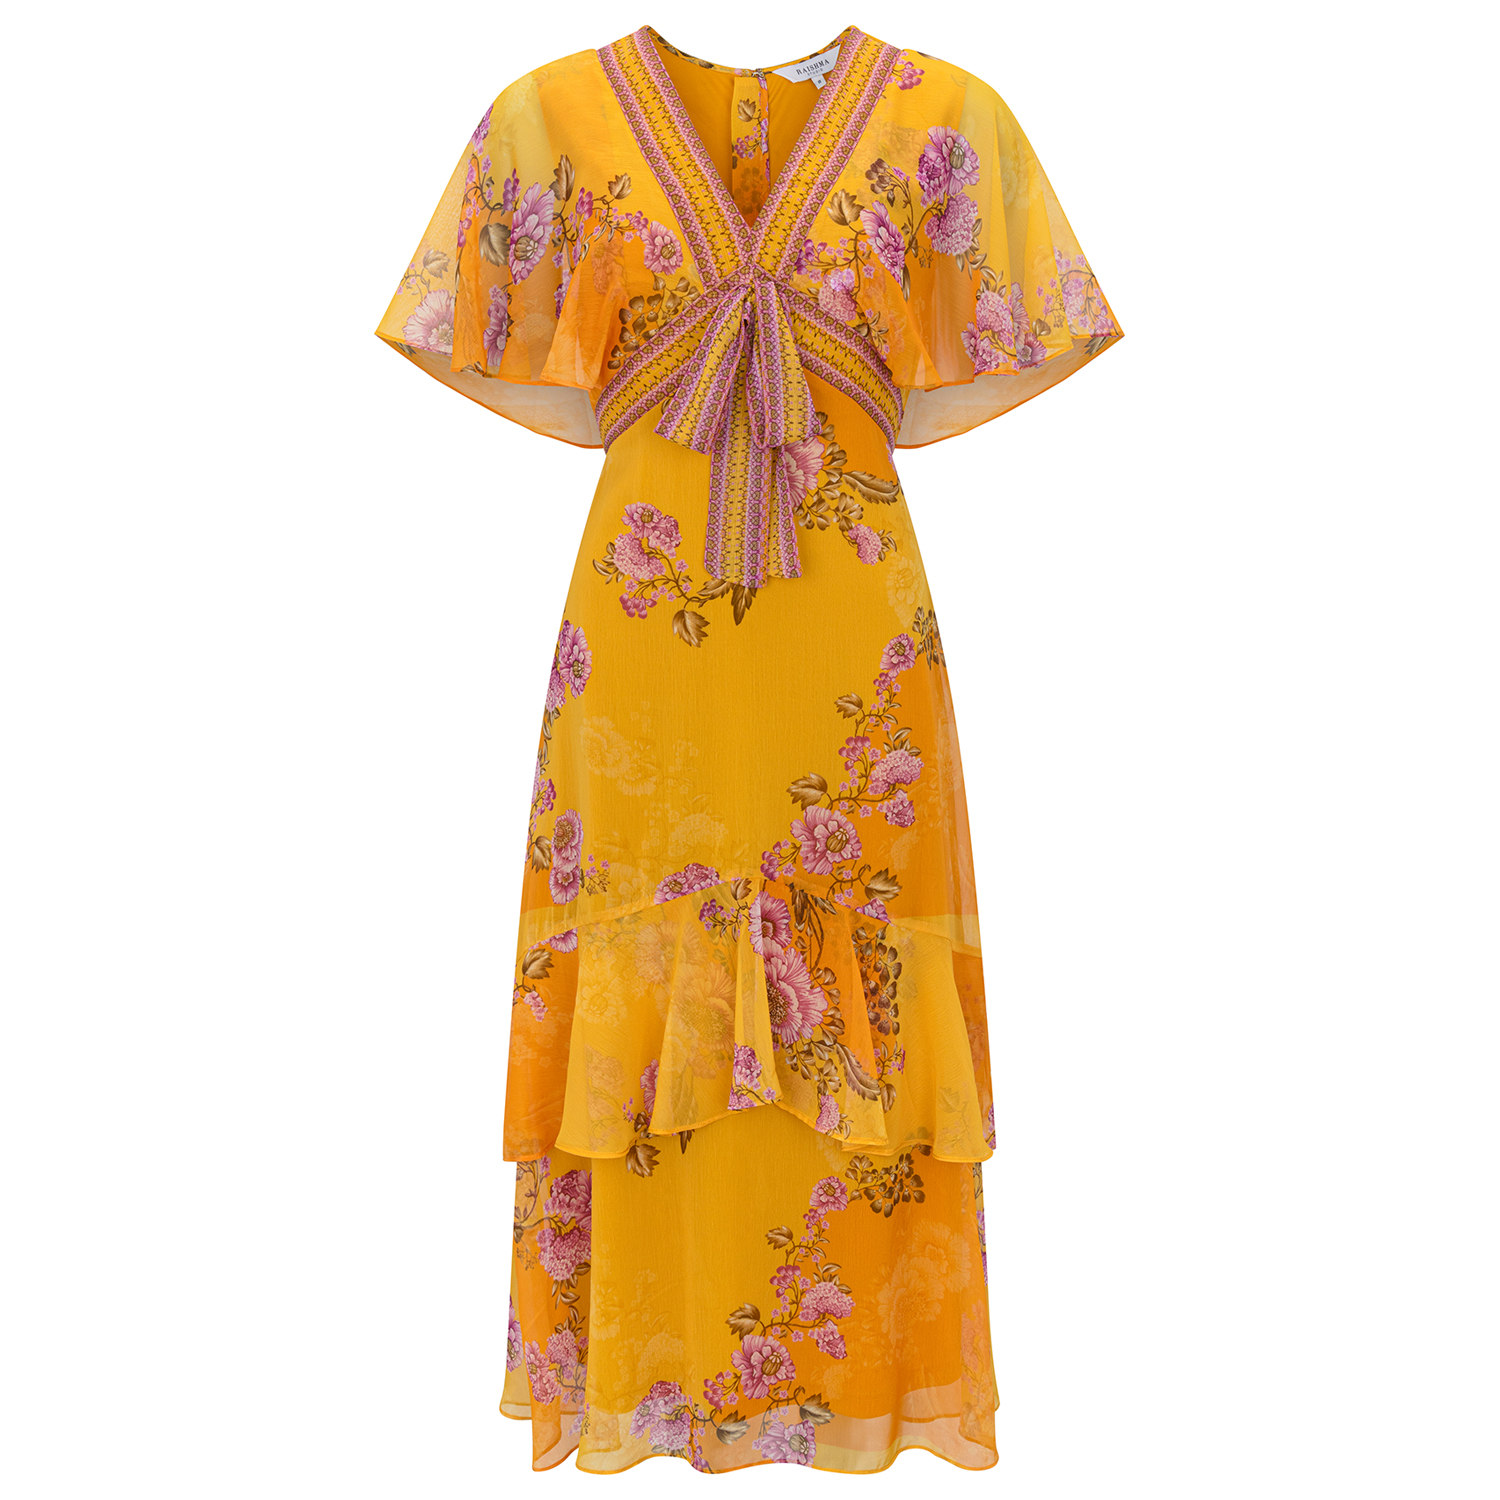 Raishma Women's Yellow / Orange Katie Yellow Dress